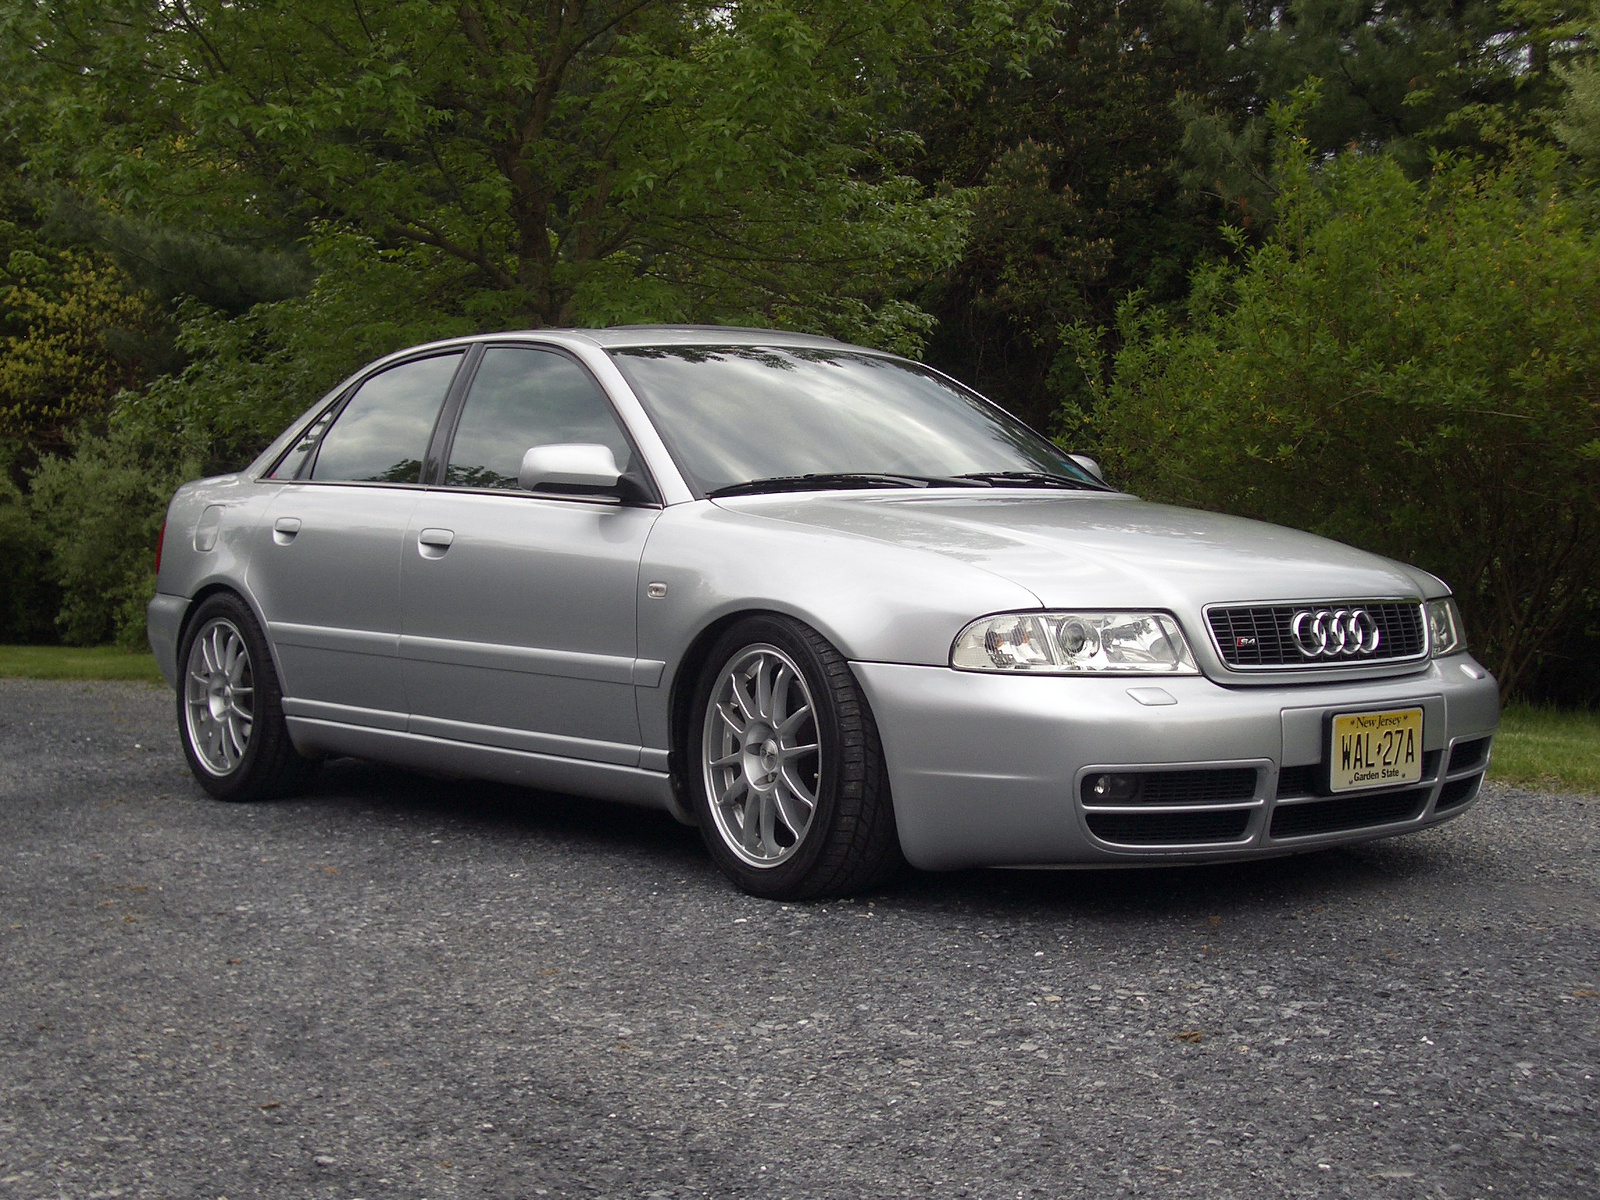 Ауди 4 2001 год. Audi s4 2001. Audi s4 2000. Ауди s4 2001 год. "Audi" "s4" "2001" NF.